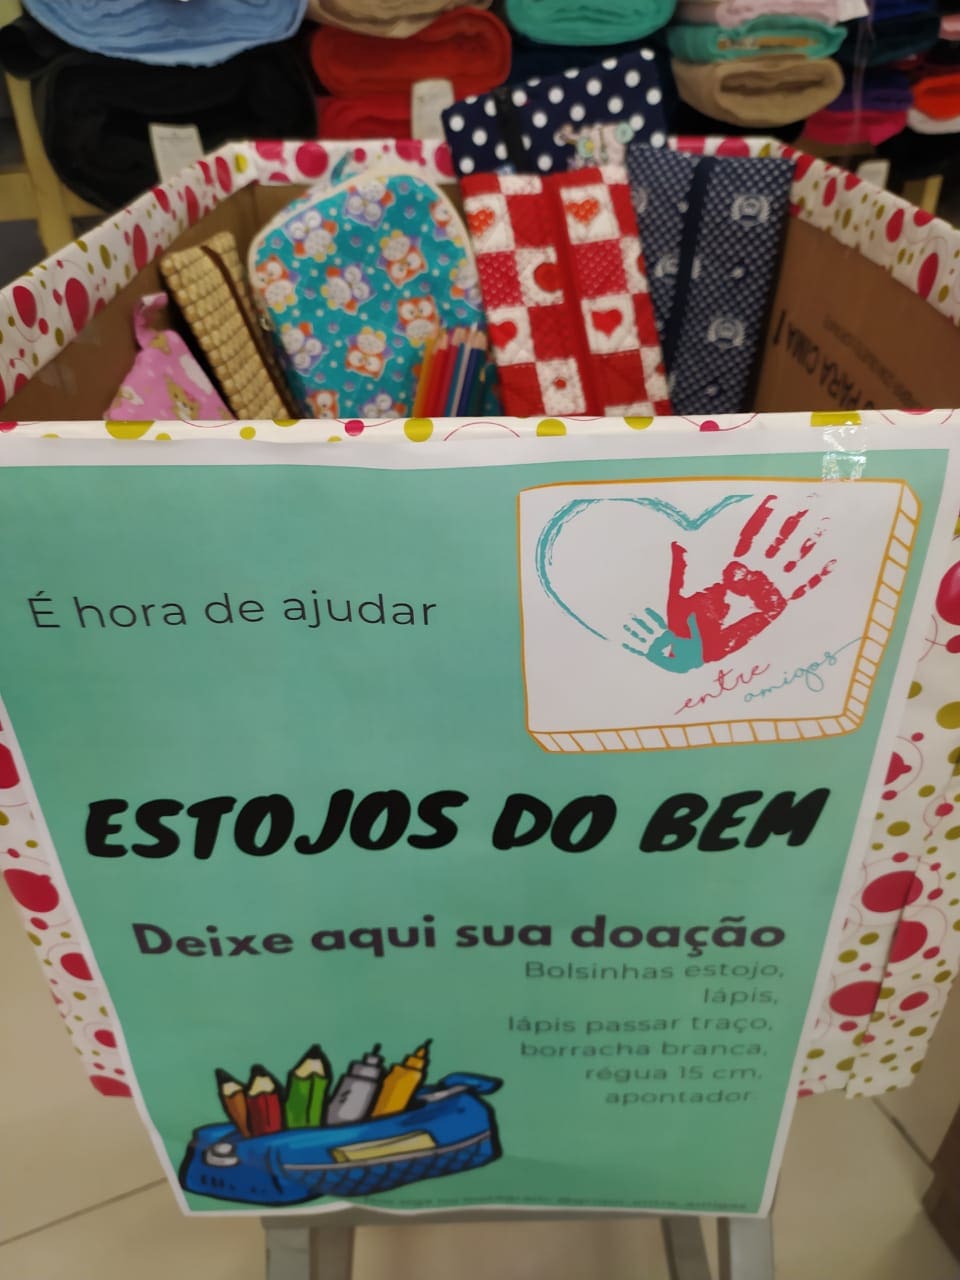 Campanha “Estojo do bem” arrecada materiais para crianças carentes em Divinópolis